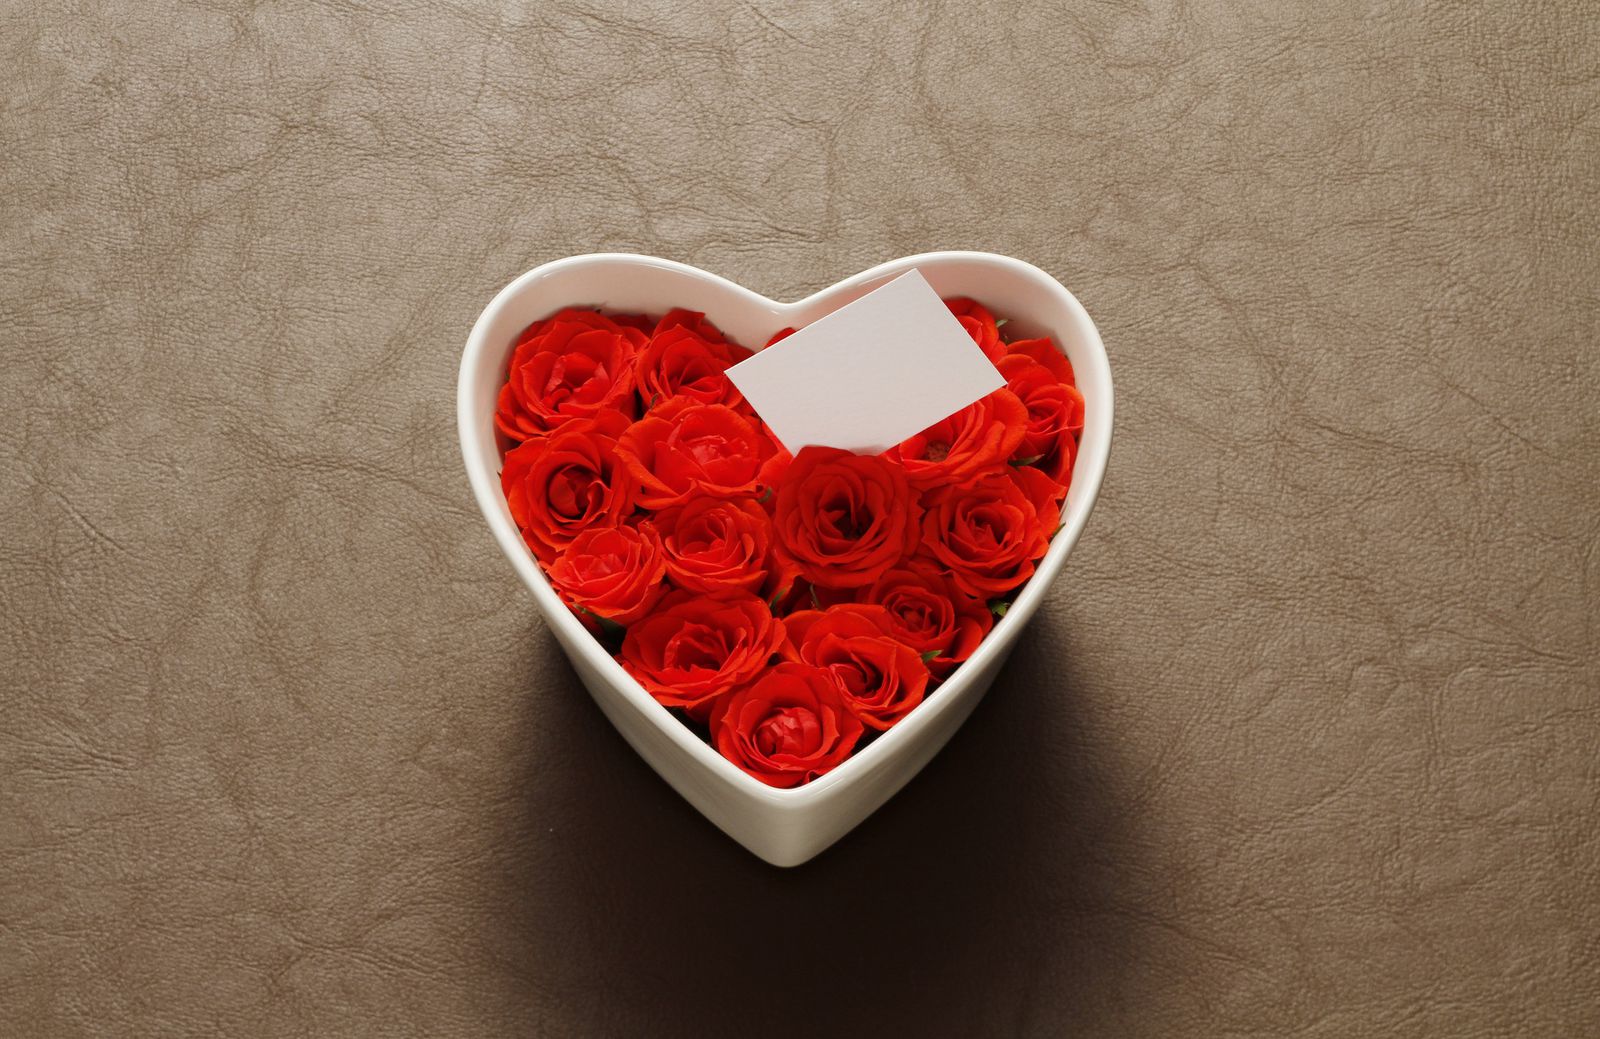 愛を伝える色々なカタチ 世界各国バレンタインデー事情調査 Retrip リトリップ